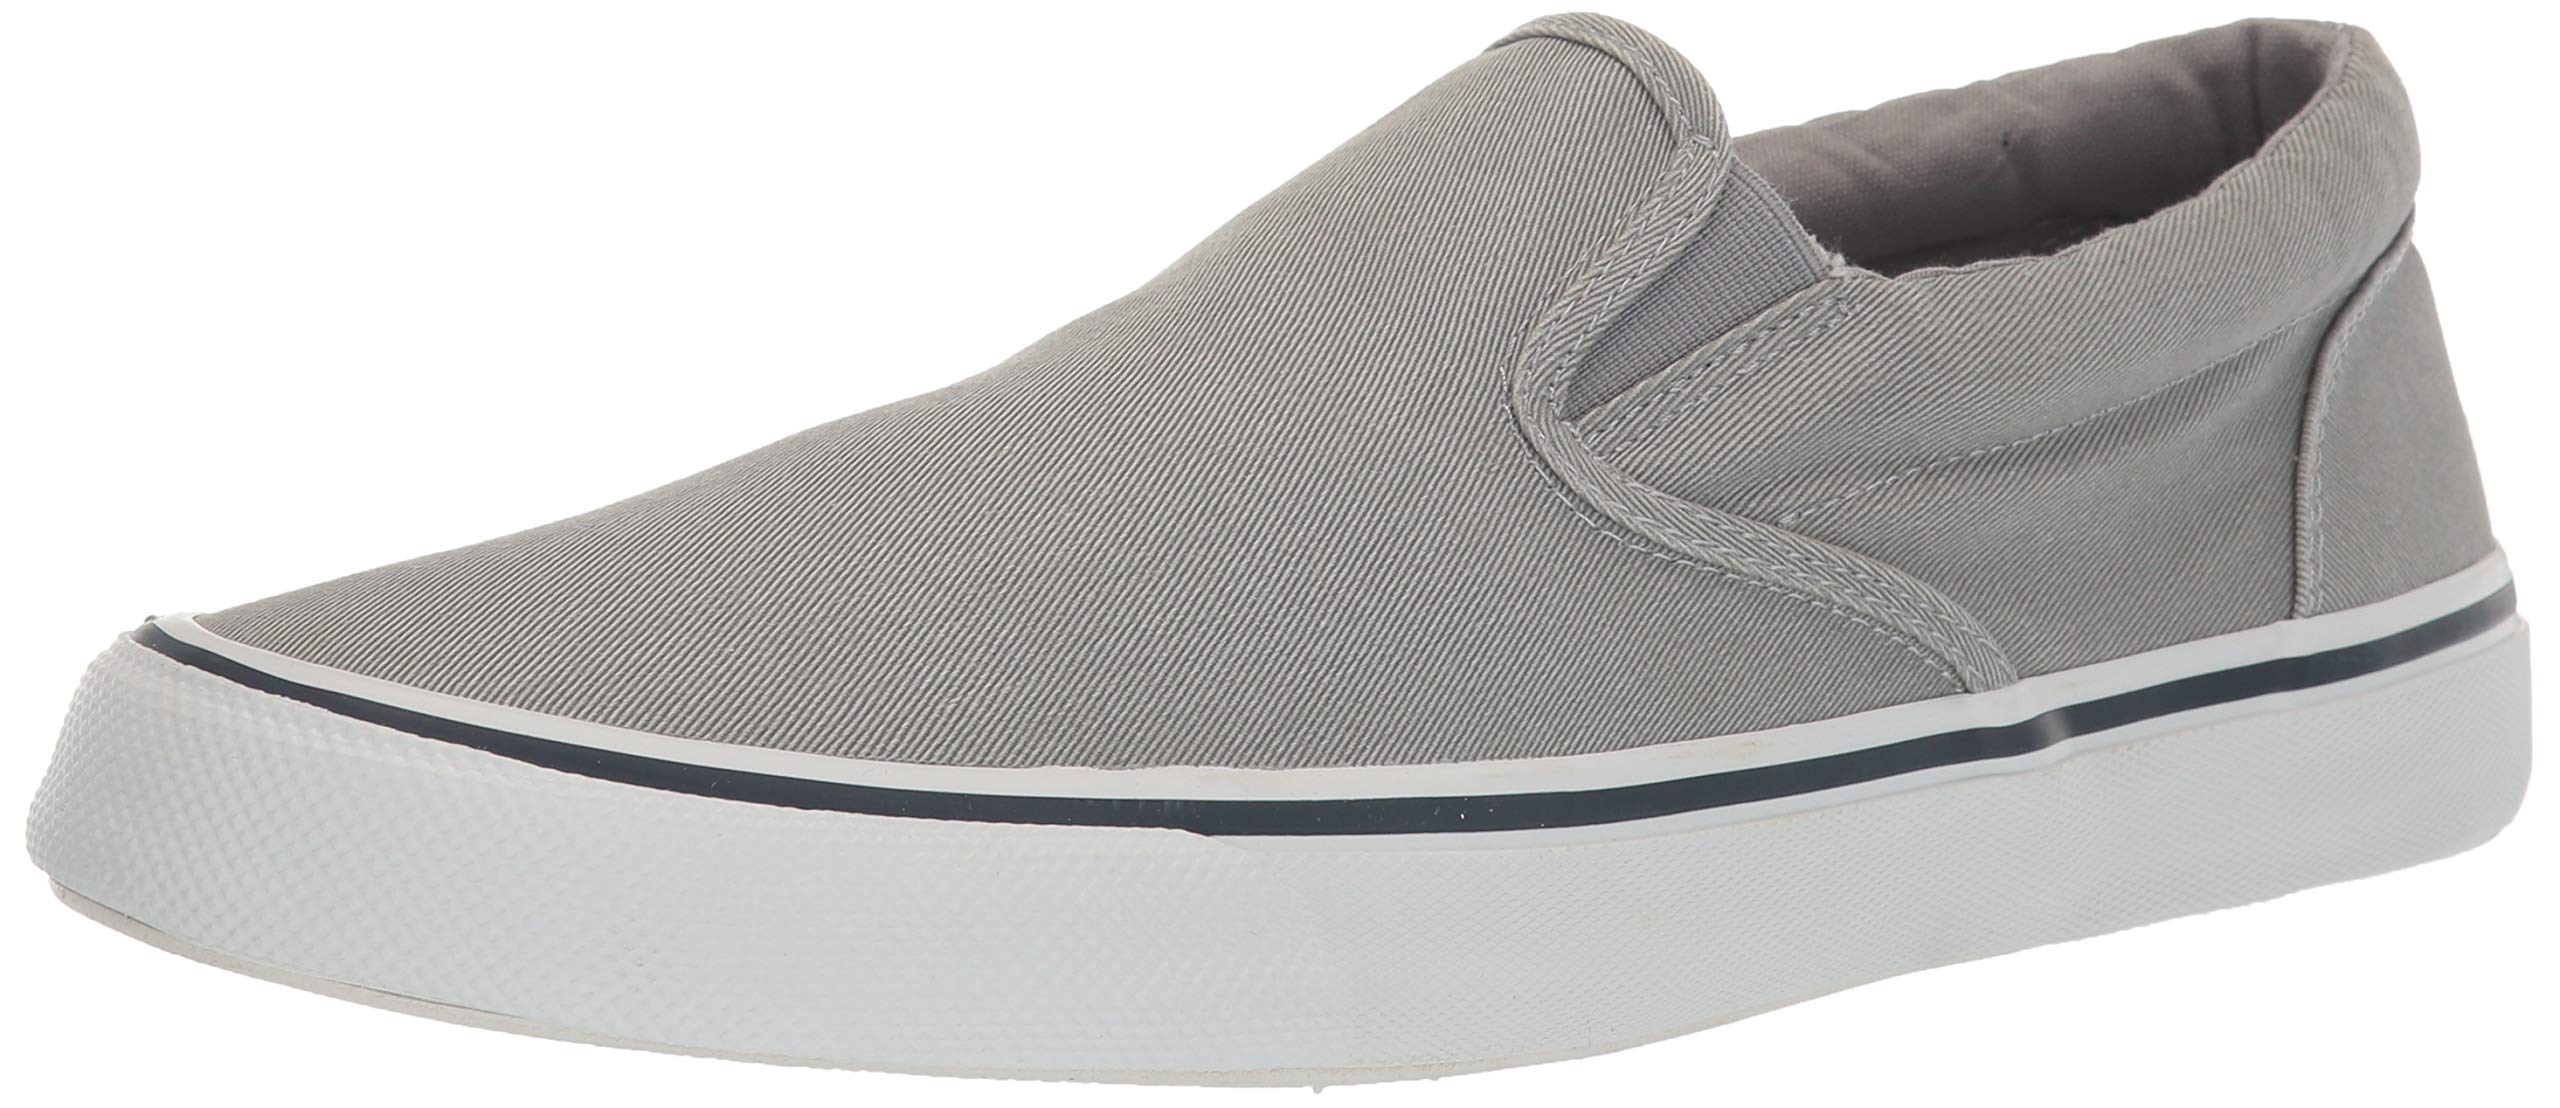 Sperry Mens Striper II Slip On Sneaker - SW Grey - Size 10.5